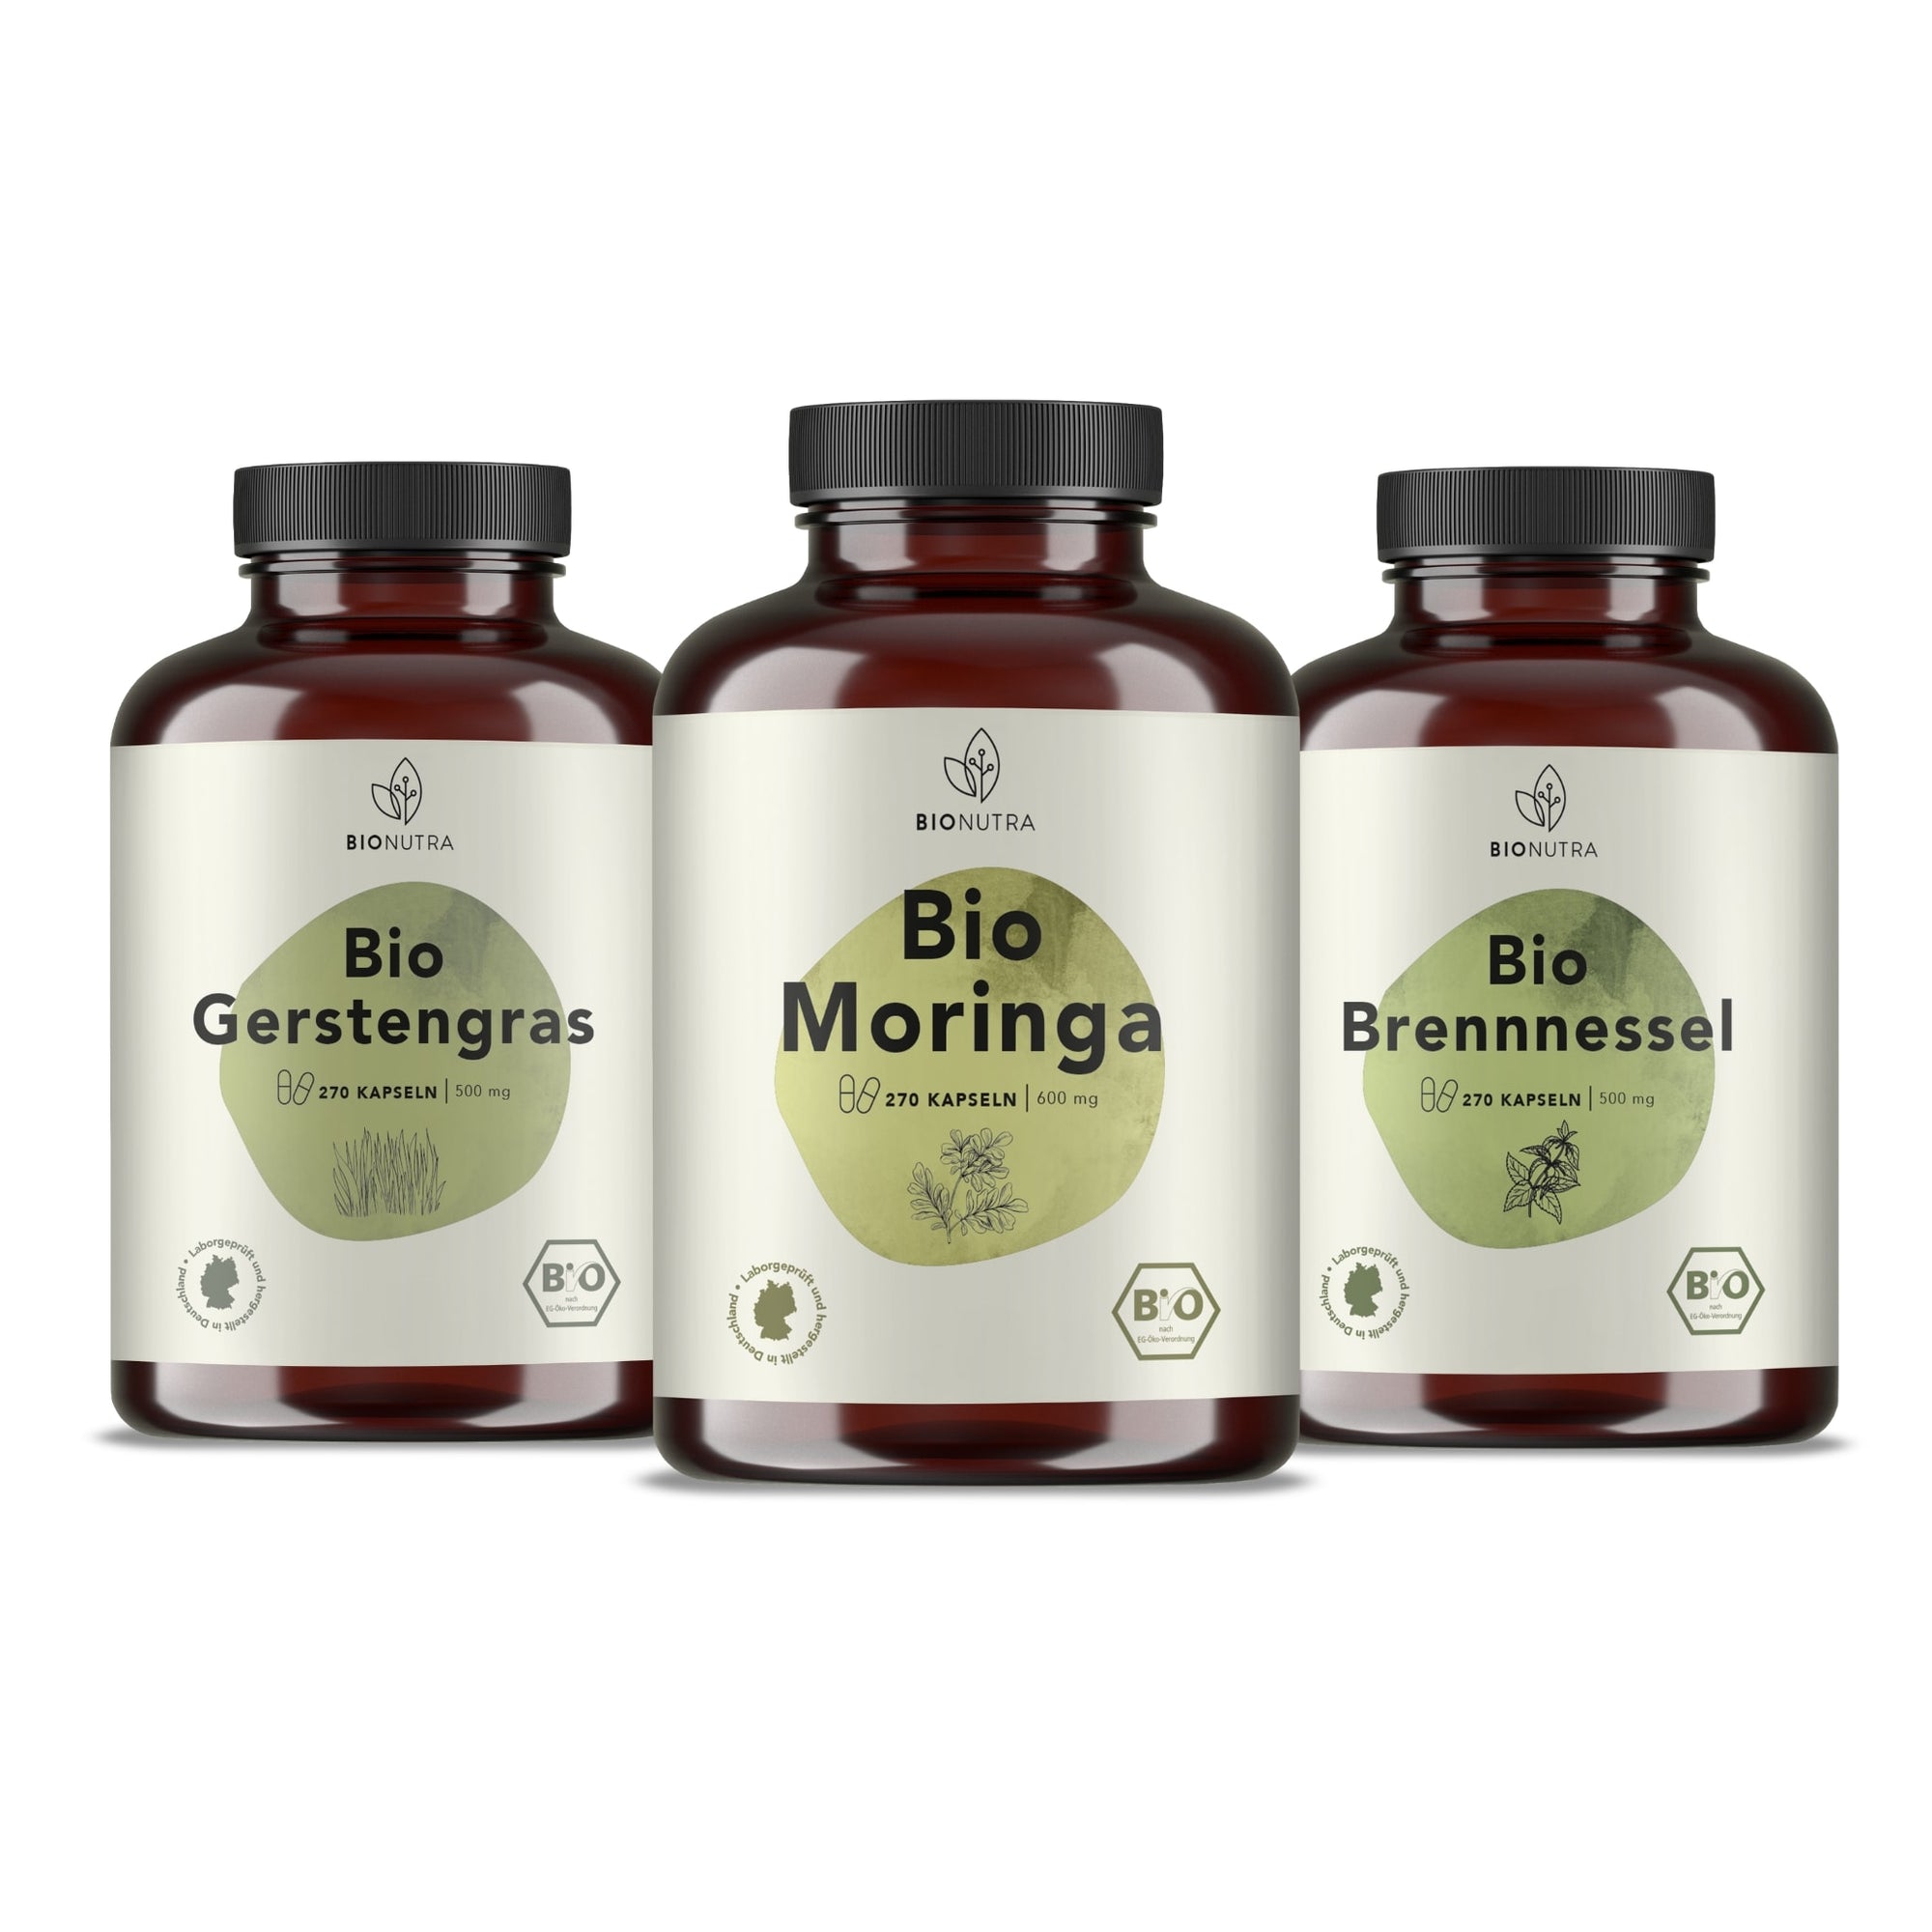 Bionutra Vital-Mikronährstoffe Set enthält Bio Moringa Kapseln, Bio Gerstengras Kapseln, Bio Brennnessel Kapseln